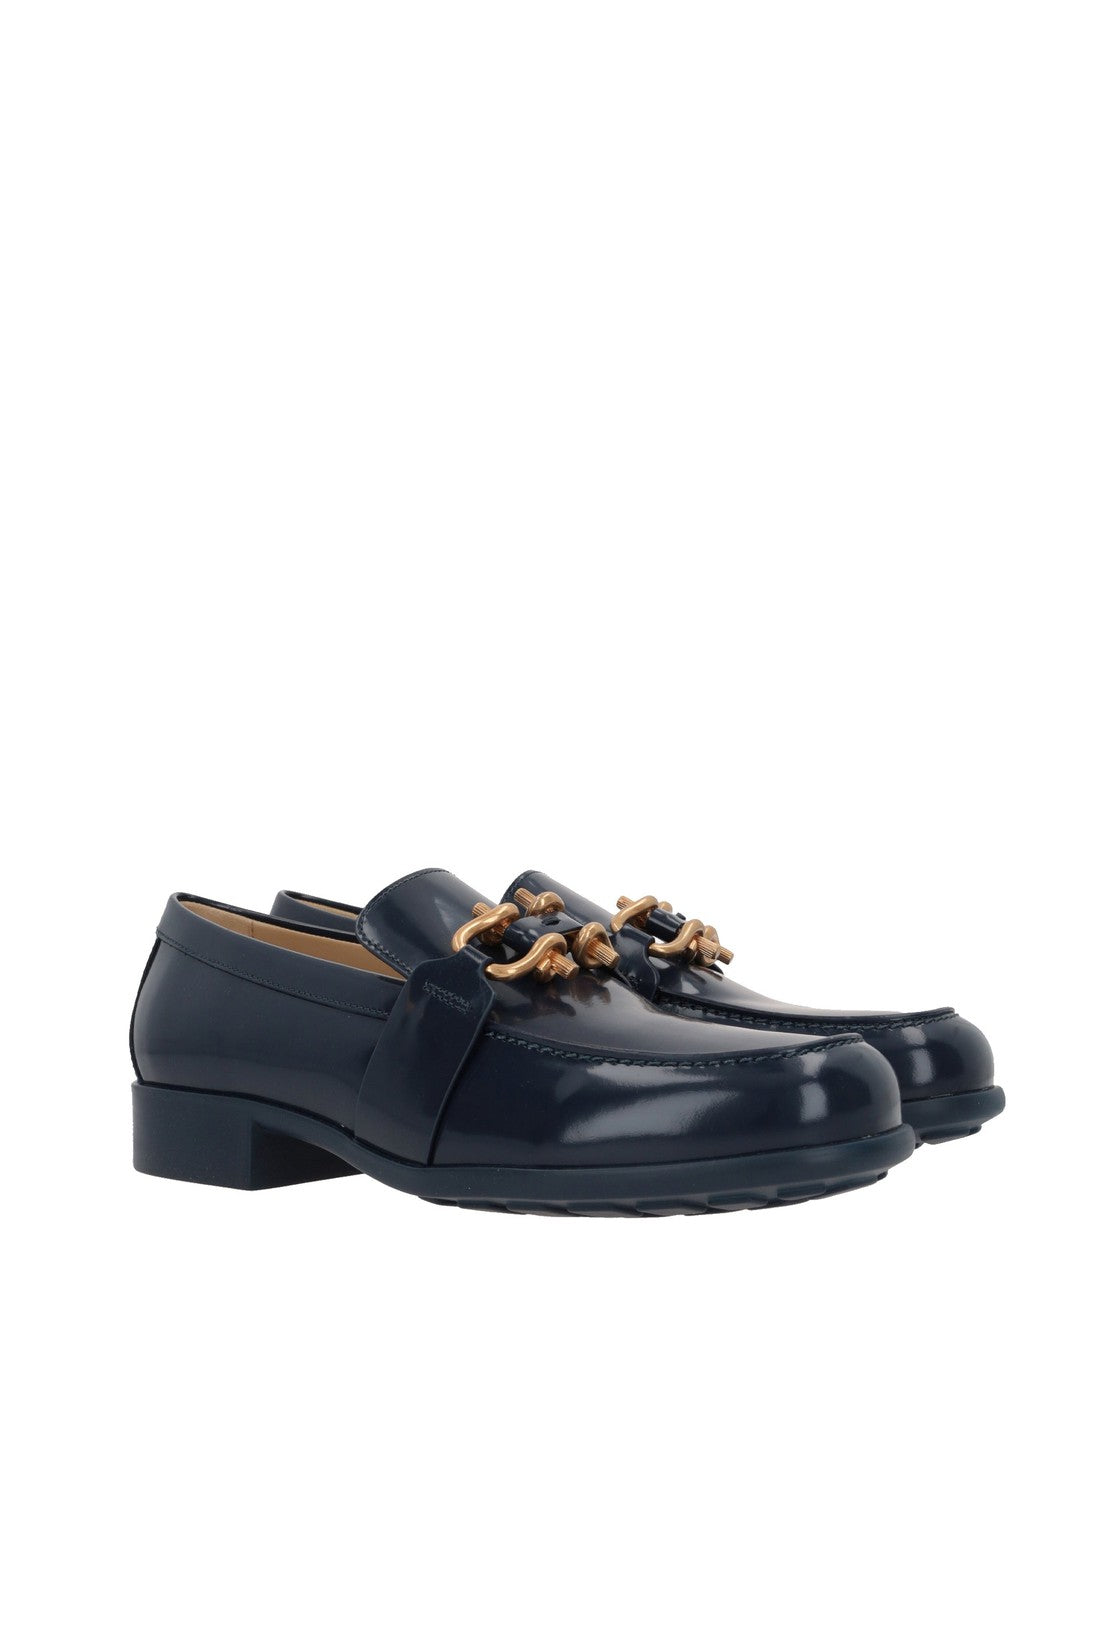 Bottega Veneta Monsieur Loafer Shoes